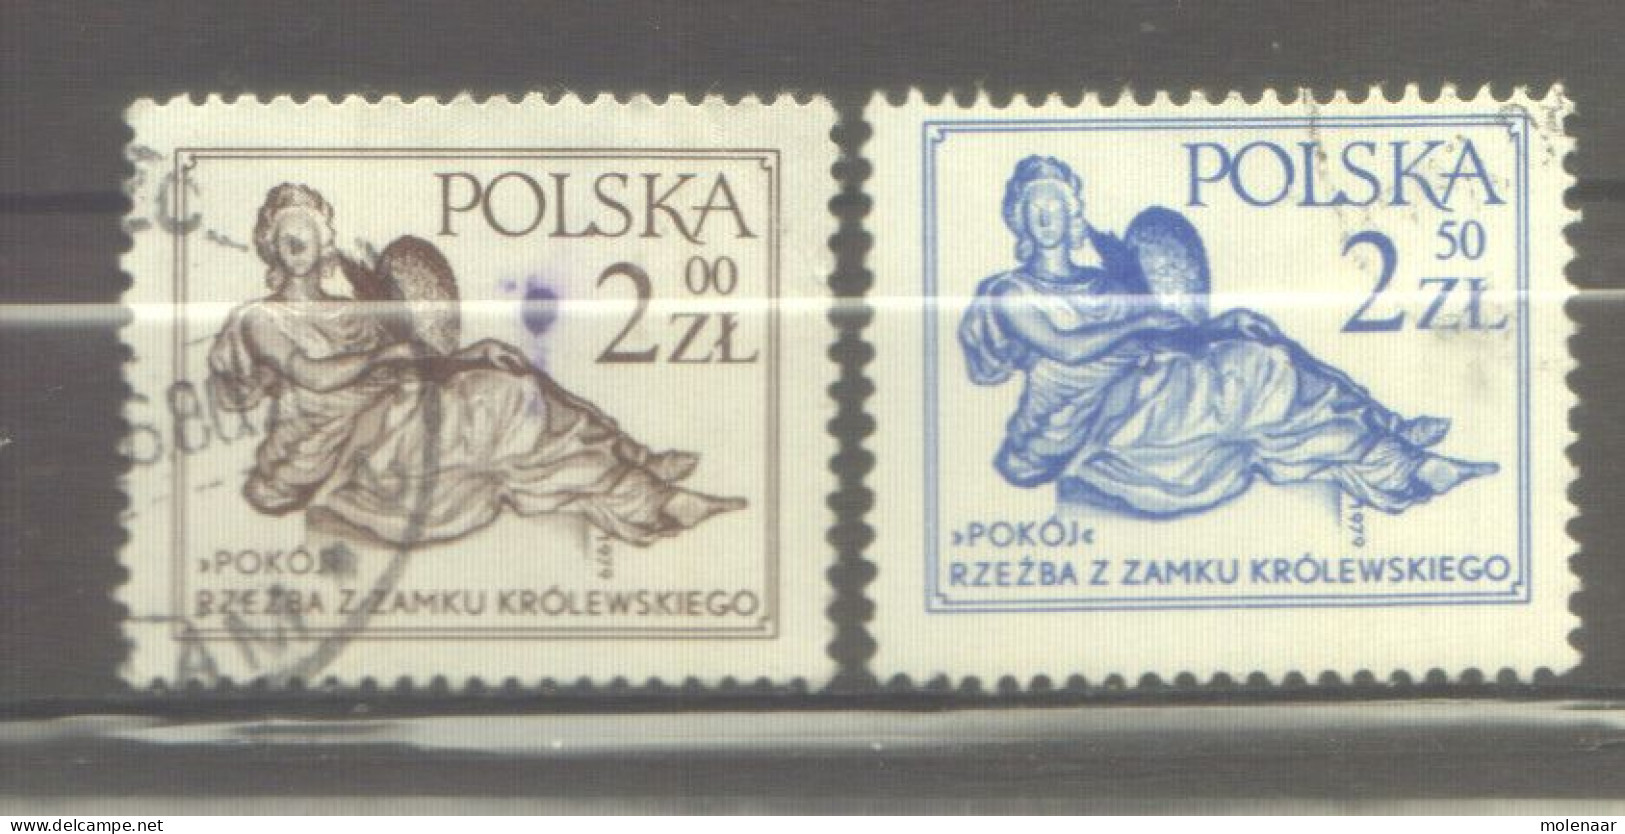 Postzegels > Europa > Polen > 1944-.... Republiek > 1971-80 > Gebruikt  2652-2653 (12176) - Oblitérés